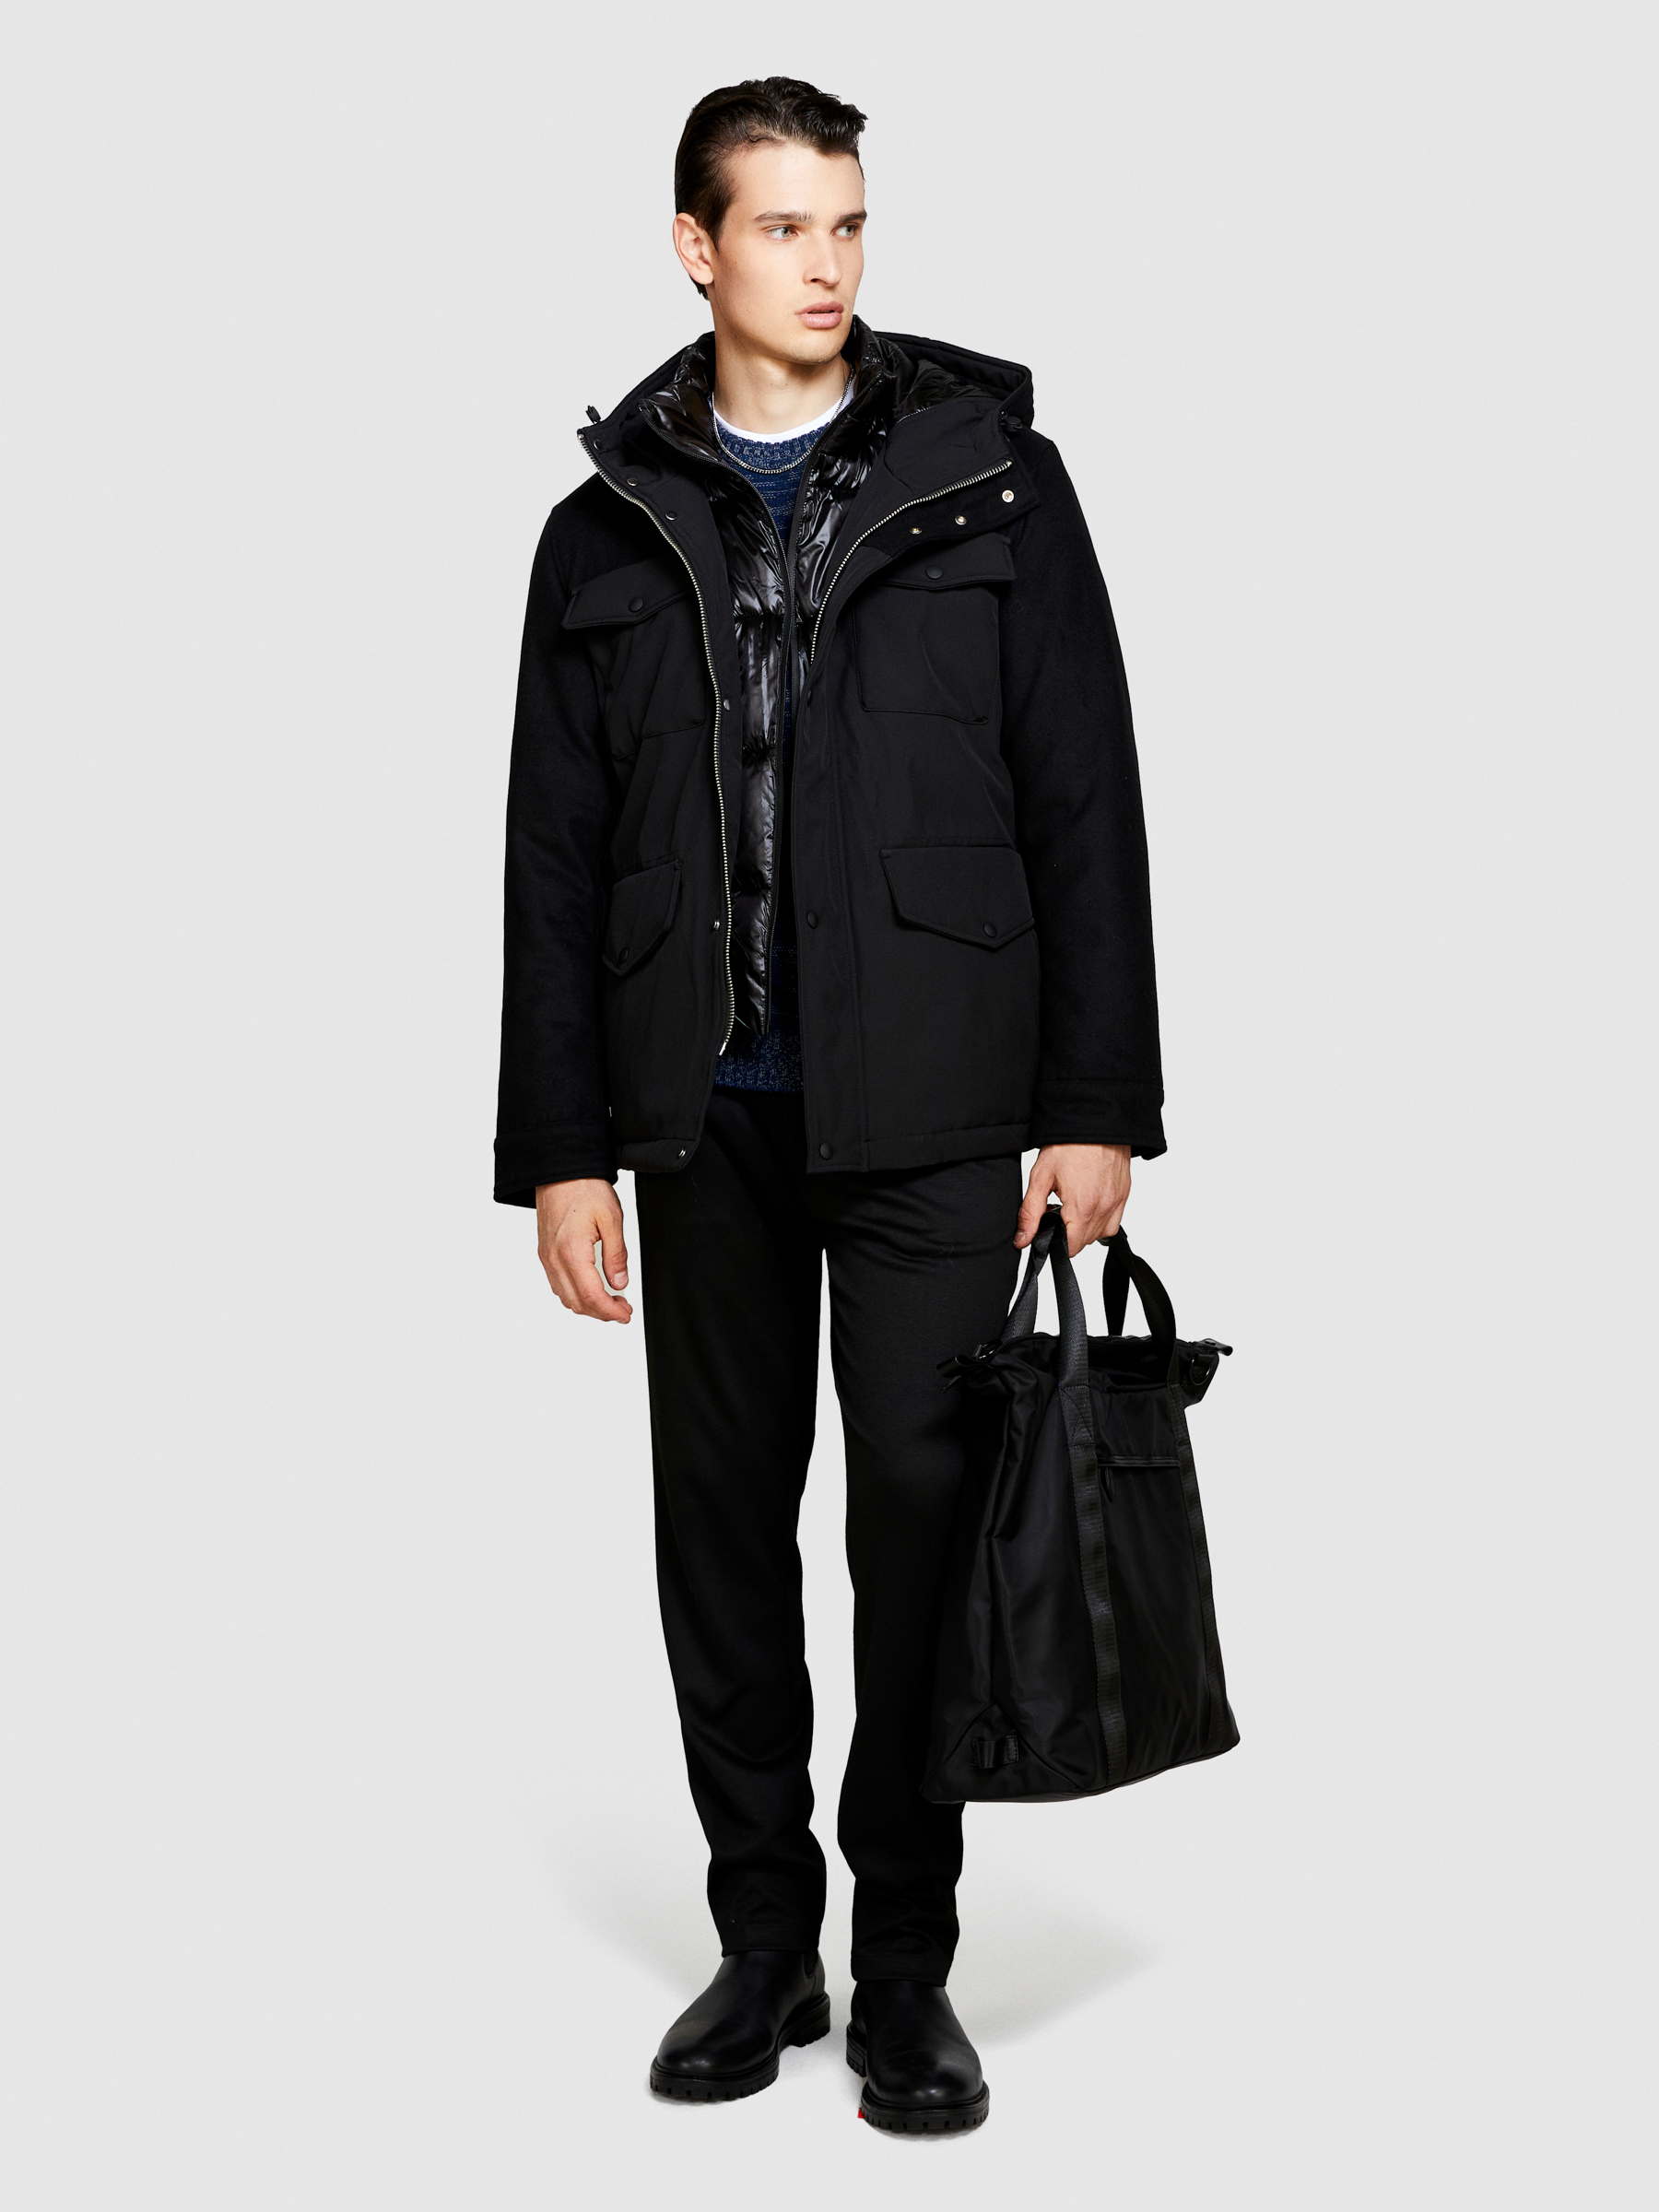 Sisley - Padded Jacket With Pockets, Man, Black, Size: 54